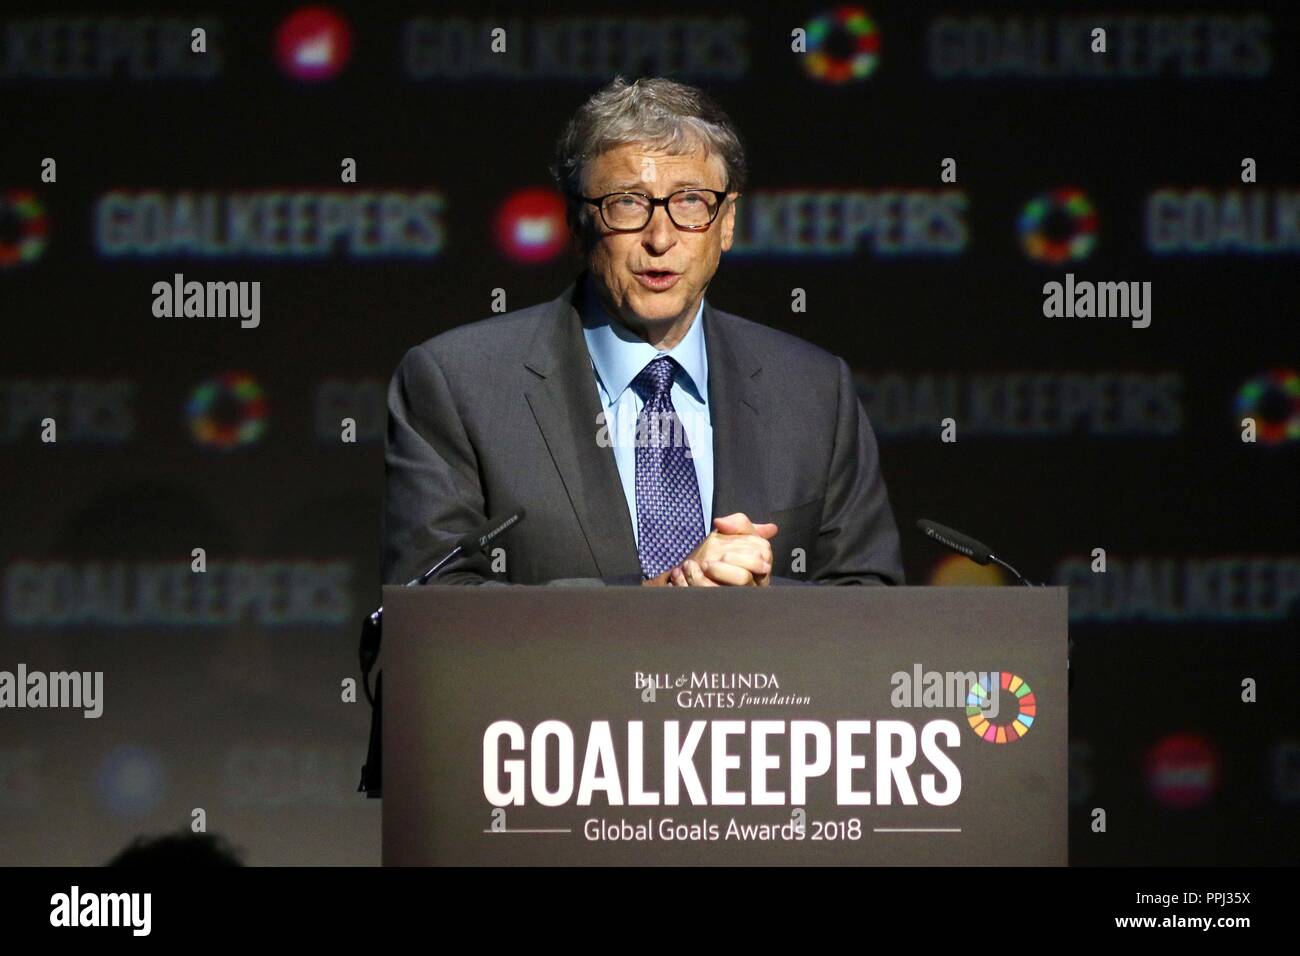 Bill Gates spricht während der Goalkeeper Global Goals Awards im Jazz im Lincoln Center in New York. Torhüter sind eine Initiative der Bill & Melinda Gates Foundation, um das Bewusstsein für die globalen Ziele für nachhaltige Entwicklung zu schärfen, die die Staats- und Regierungschefs der Welt 2015 unterzeichnet haben. Stockfoto